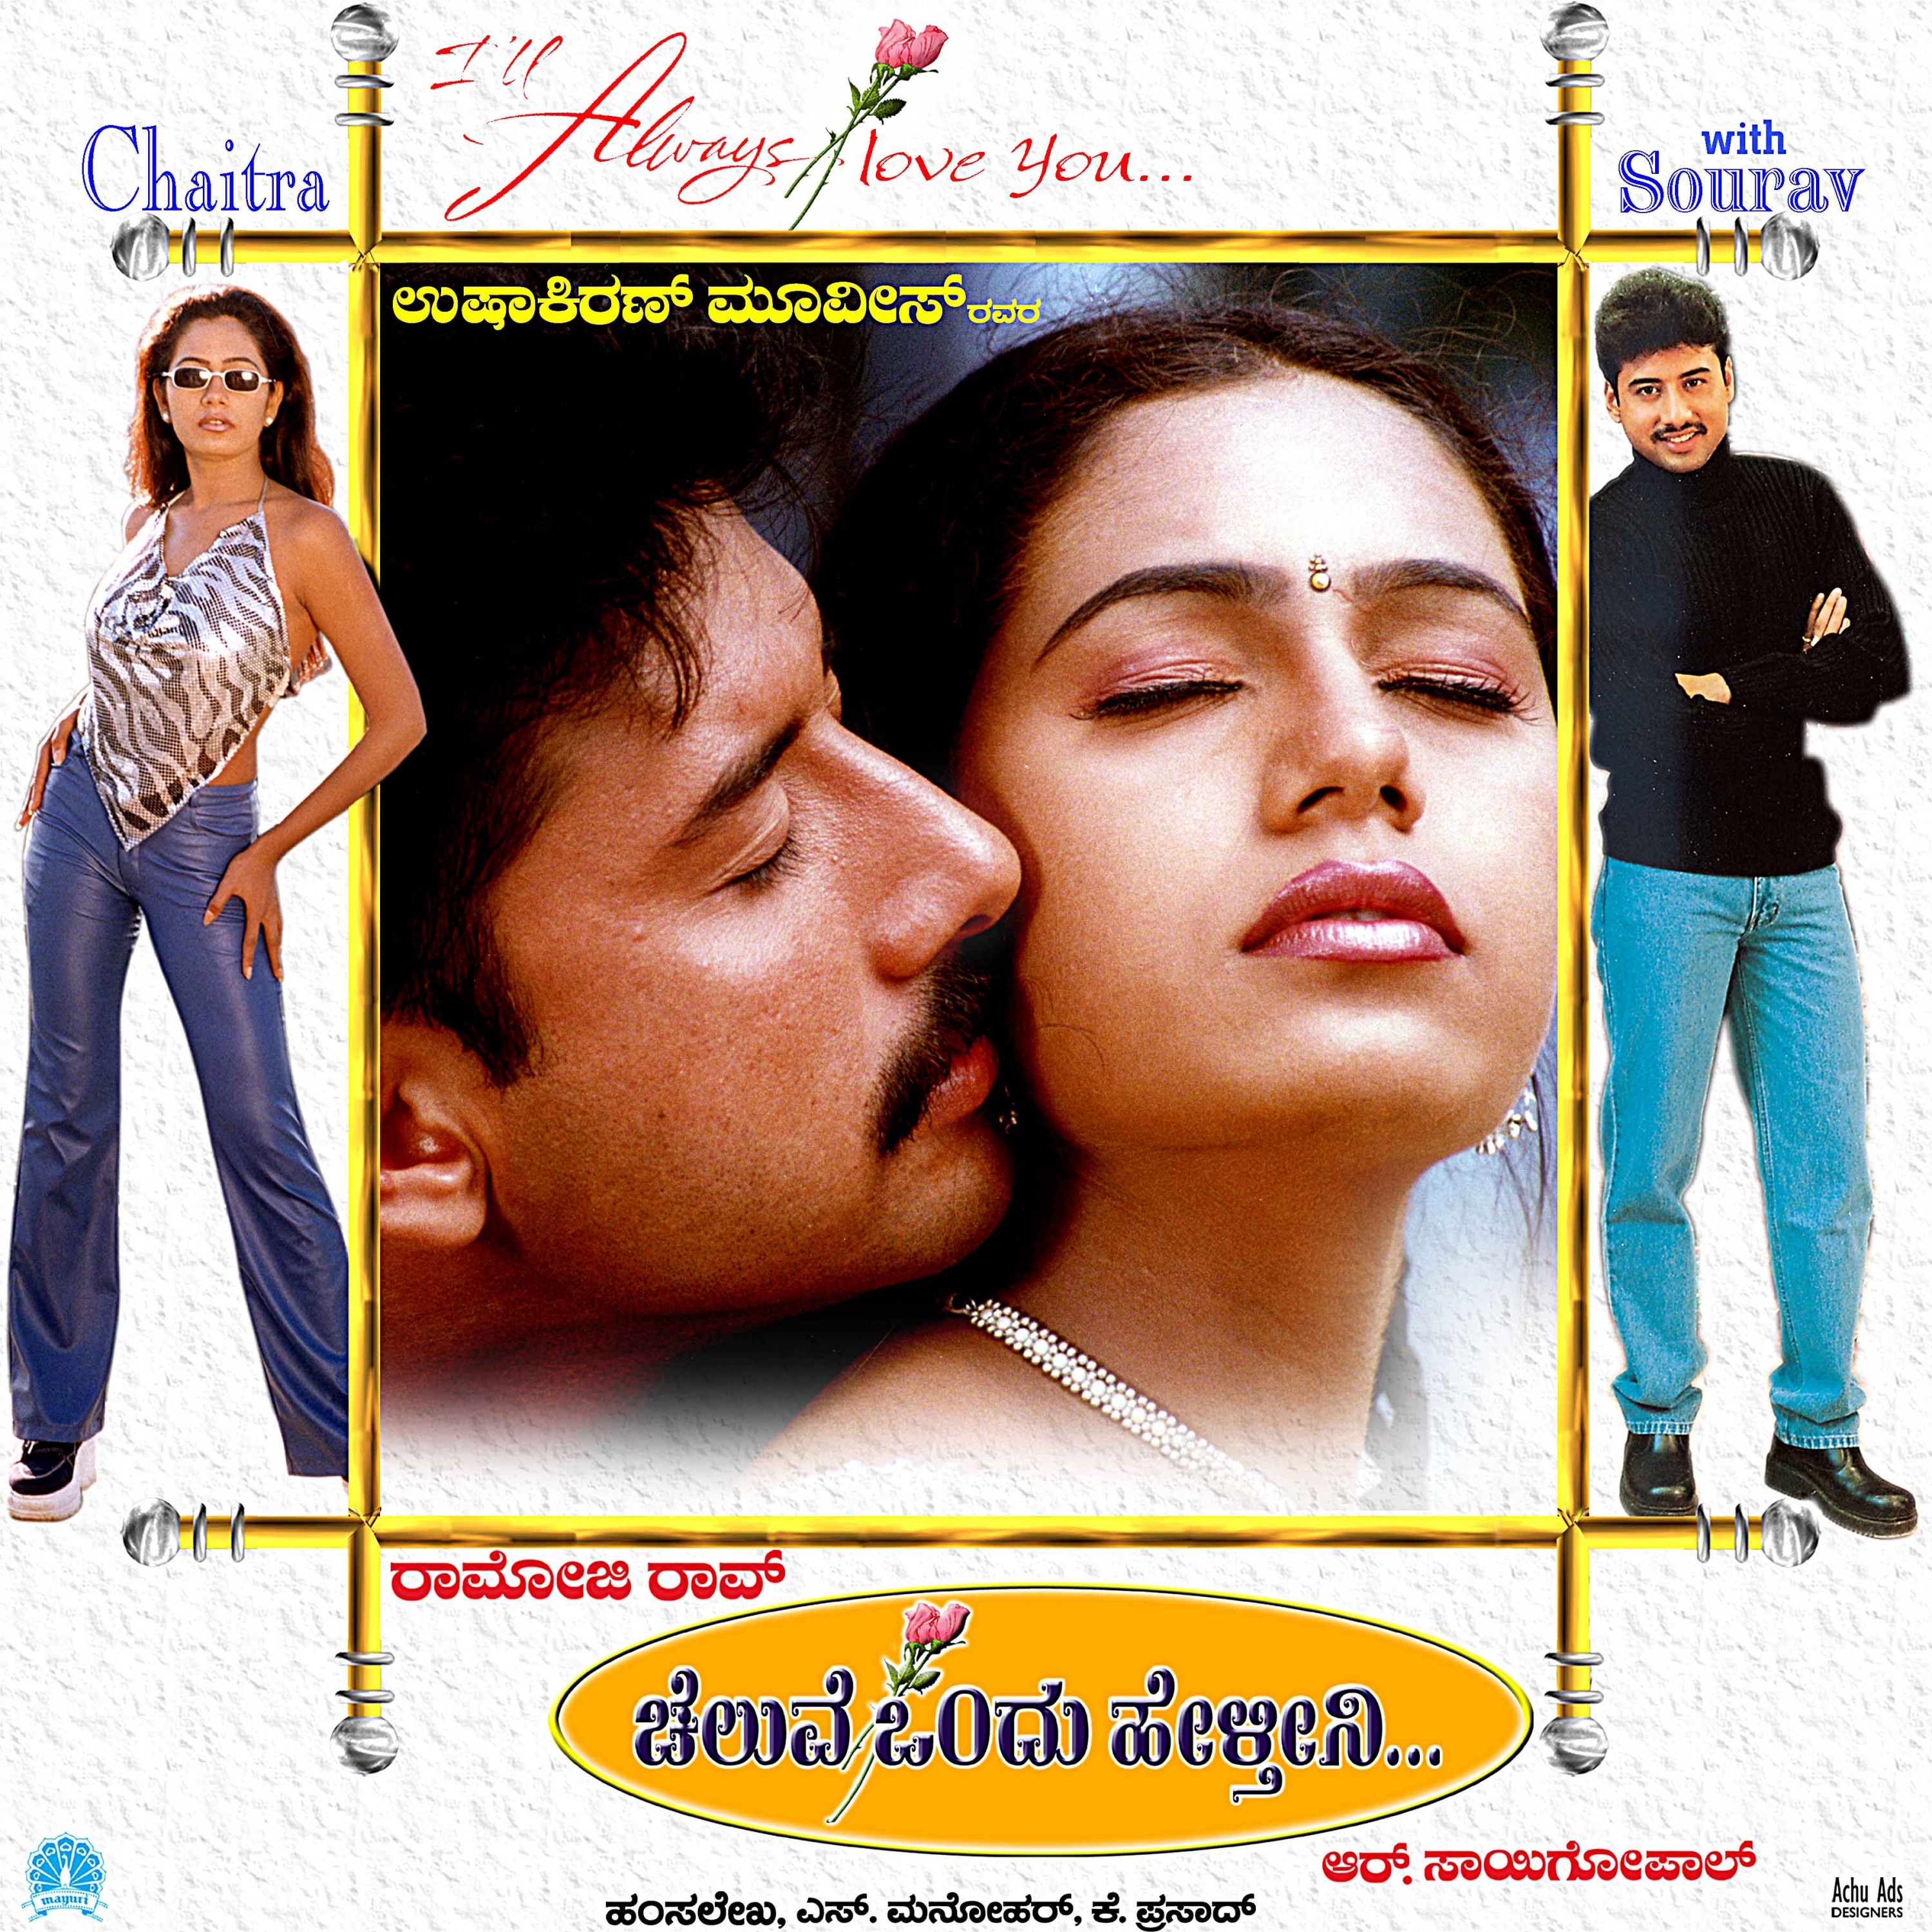 Mega Sized Movie Poster Image for Cheluve Ondu Helthini (#5 of 5)